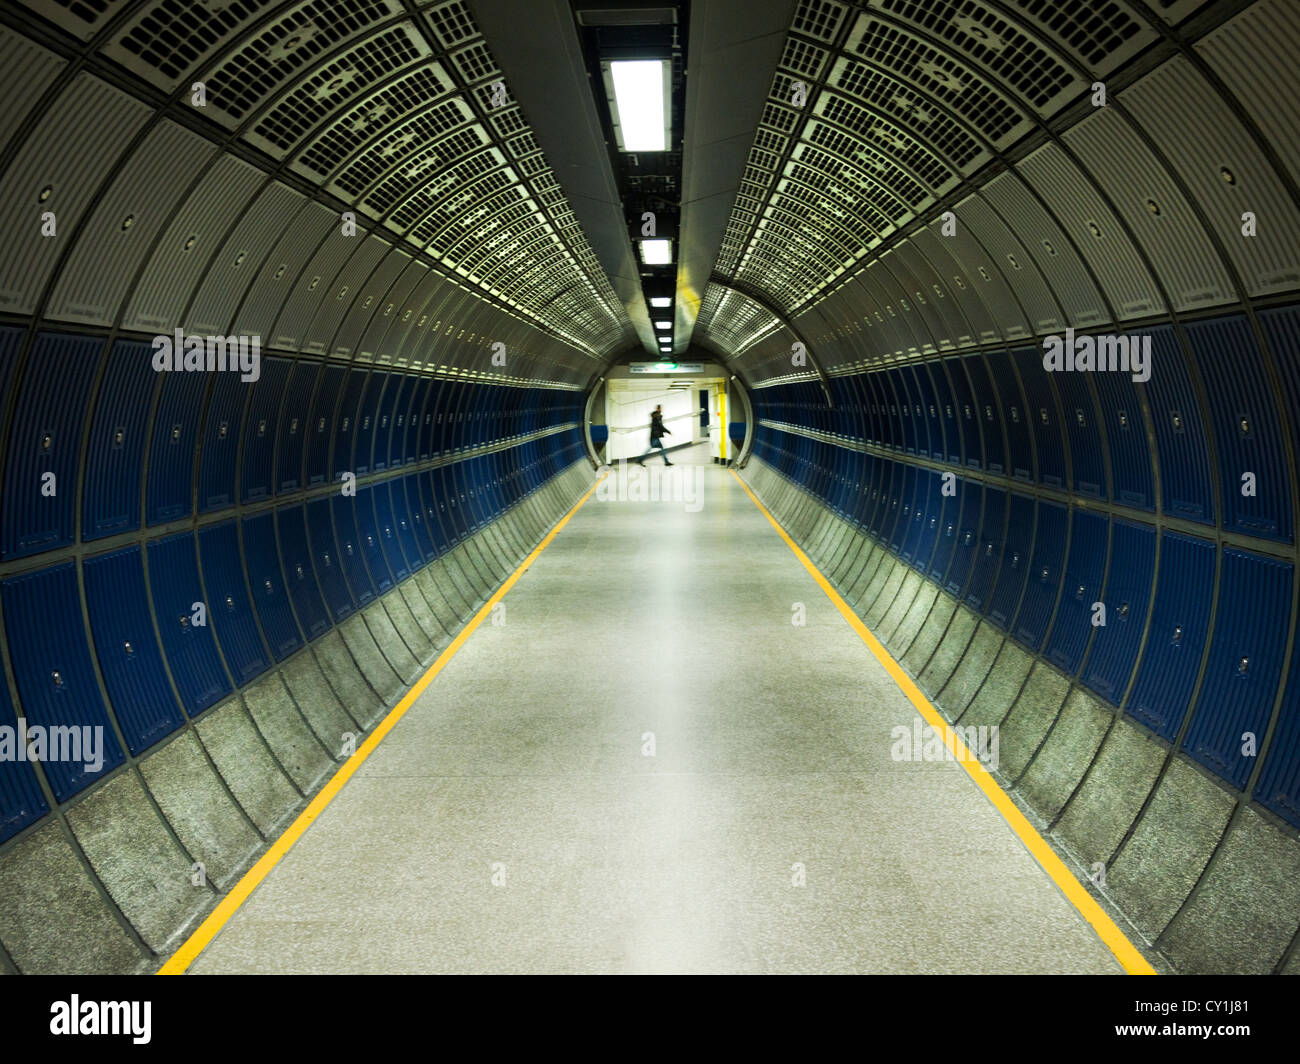 Moderno túnel subterráneo con lone figura caminando a través de la distancia Foto de stock